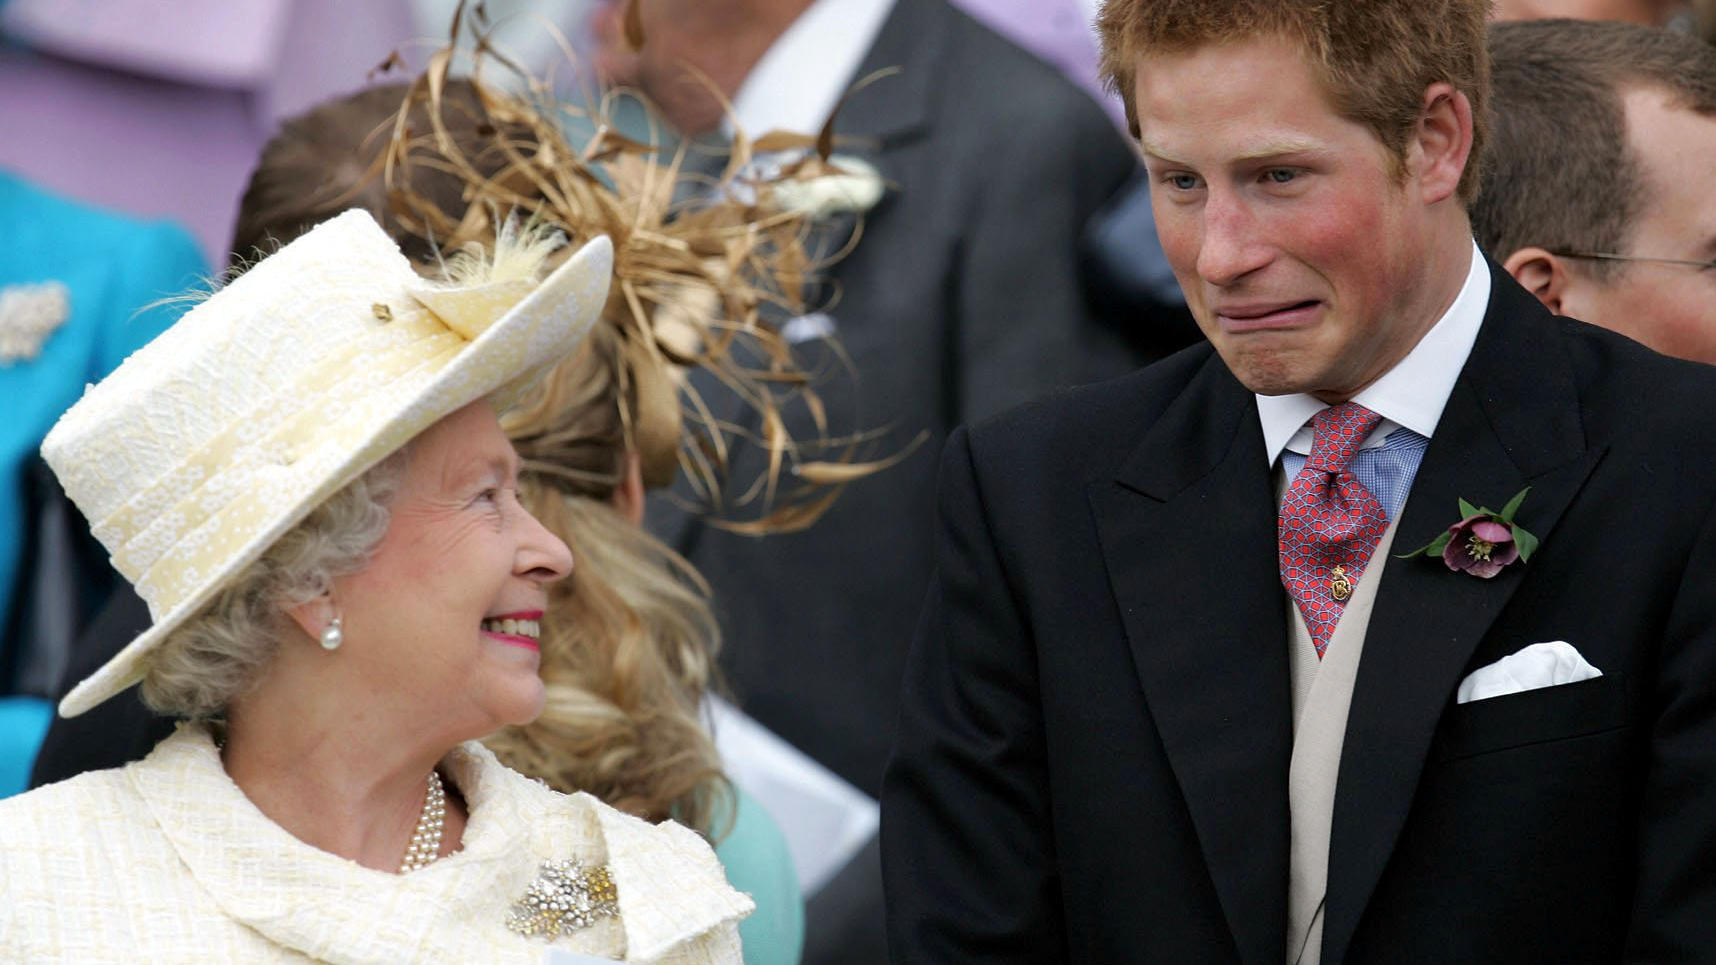 Die Queen & Prinz Harry hatten besondere Beziehung - So innig war ihre Beziehung